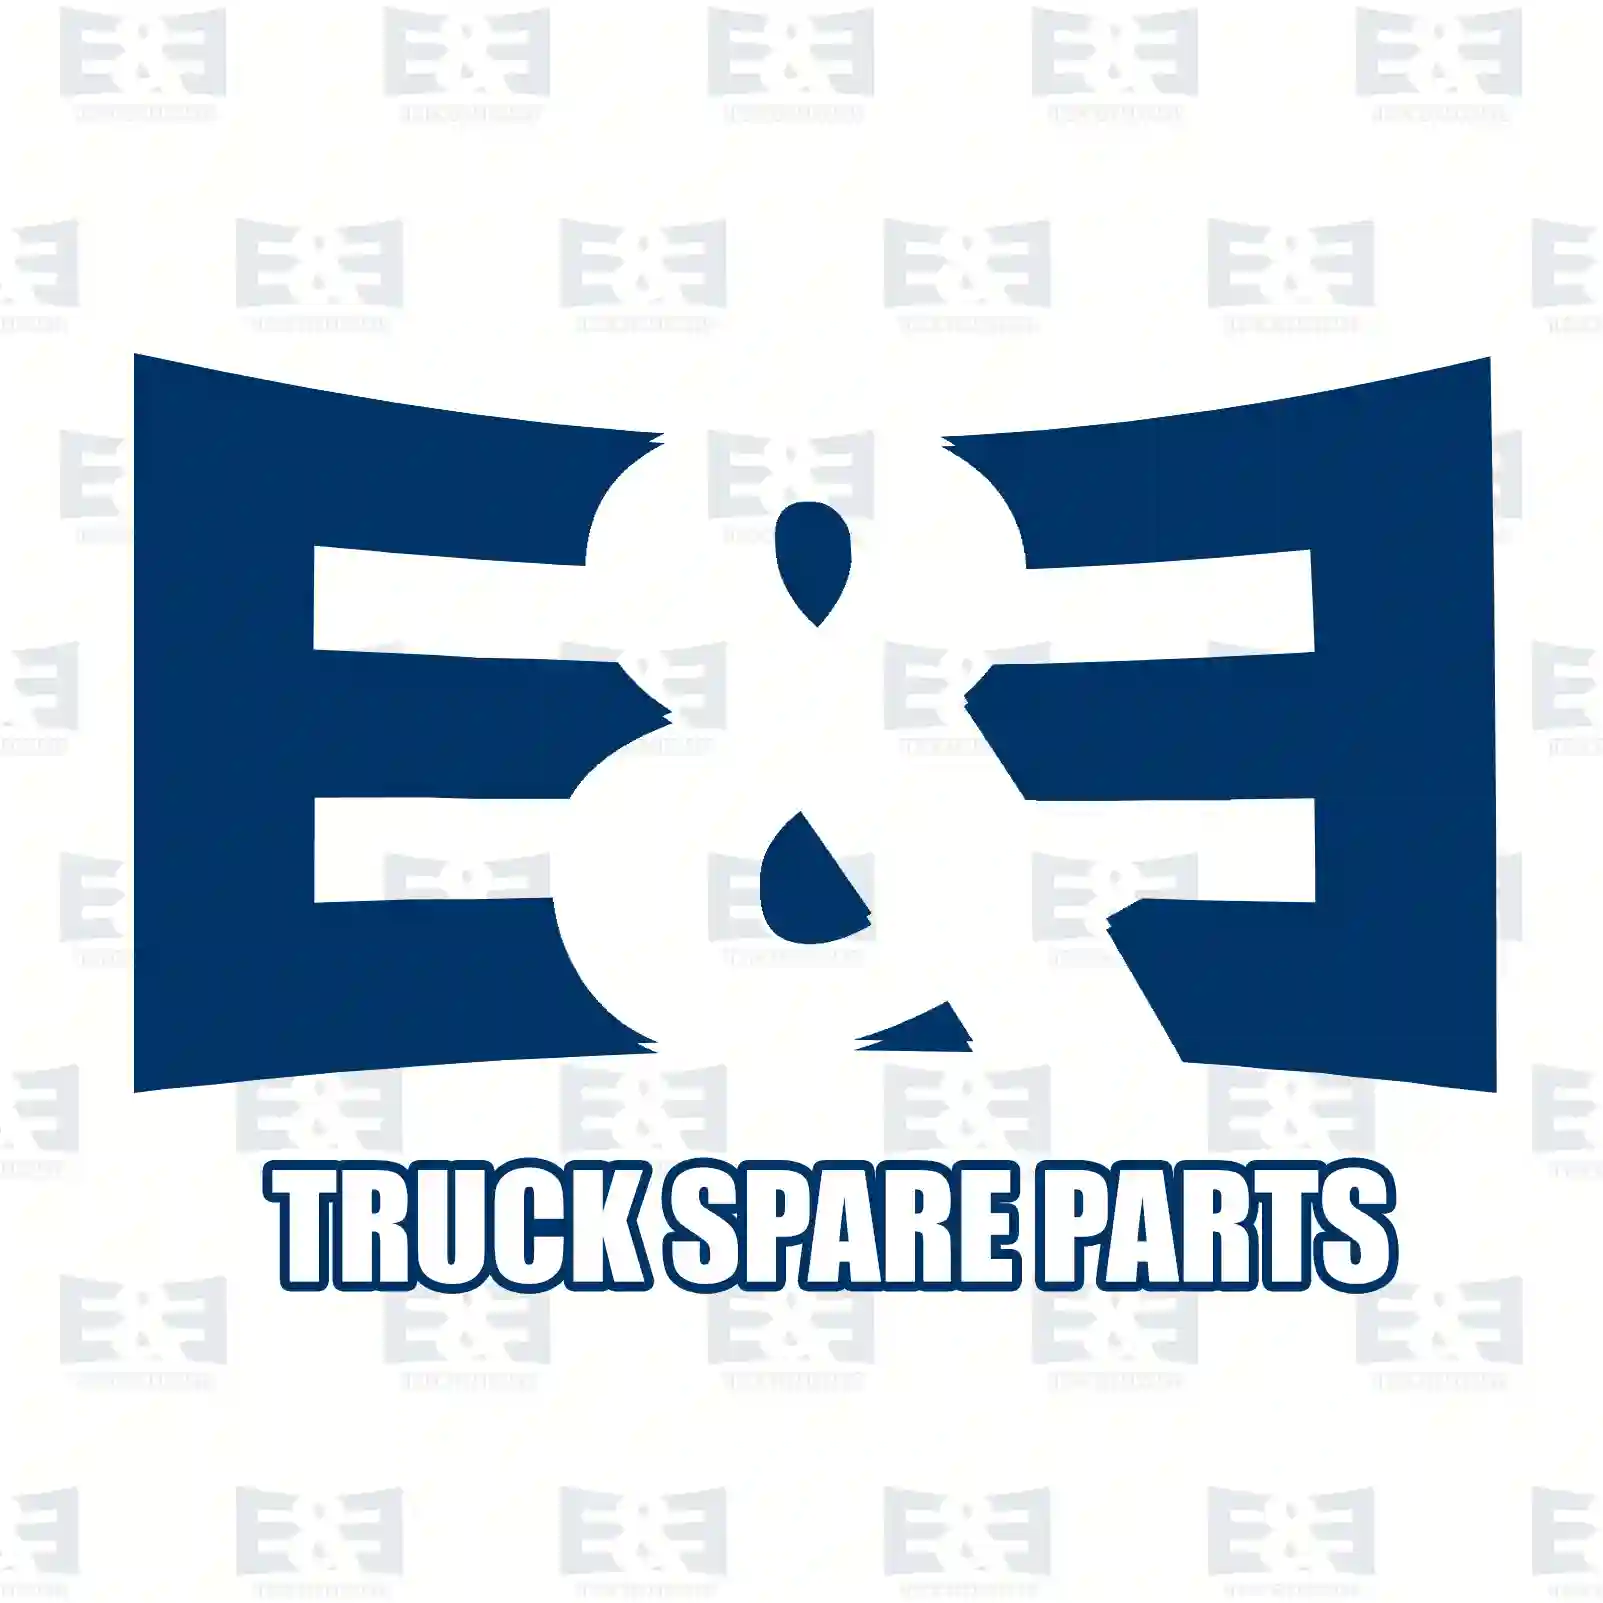 Center bearing, 2E2276046, 1810012, 4060617, 4104708, 6635542, 7239265, 95VB-4826-AA, 99VB-4826-AB, CC11-4826-AA, YC1W-4826-BC, ZG02472-0008 ||  2E2276046 E&E Truck Spare Parts | Truck Spare Parts, Auotomotive Spare Parts Center bearing, 2E2276046, 1810012, 4060617, 4104708, 6635542, 7239265, 95VB-4826-AA, 99VB-4826-AB, CC11-4826-AA, YC1W-4826-BC, ZG02472-0008 ||  2E2276046 E&E Truck Spare Parts | Truck Spare Parts, Auotomotive Spare Parts